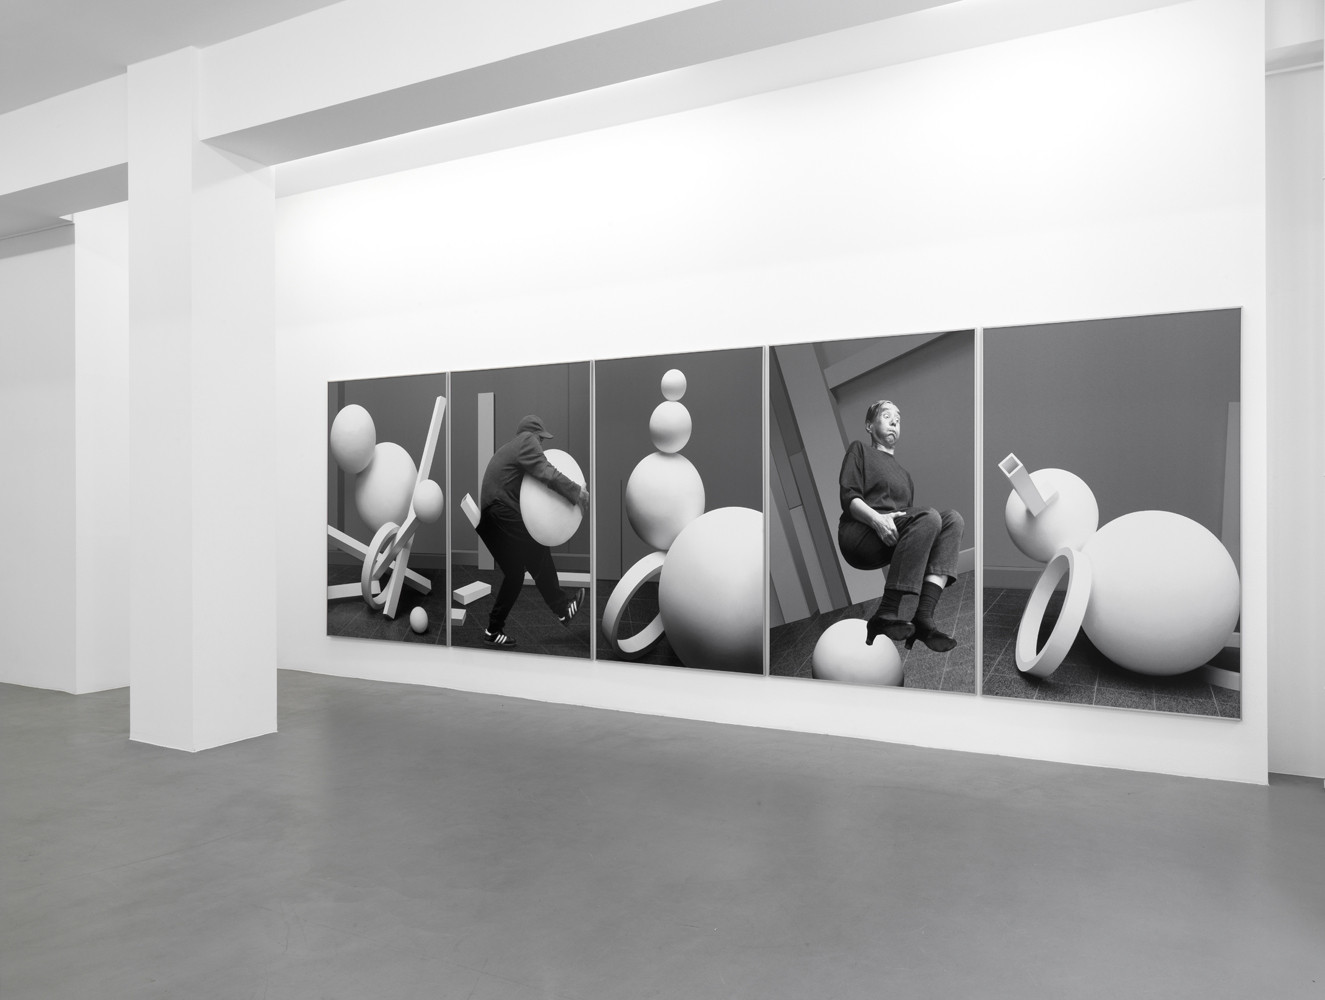 Anna & Bernhard Blume, ‘Aktionsmetaphern’, Installation view, 2011